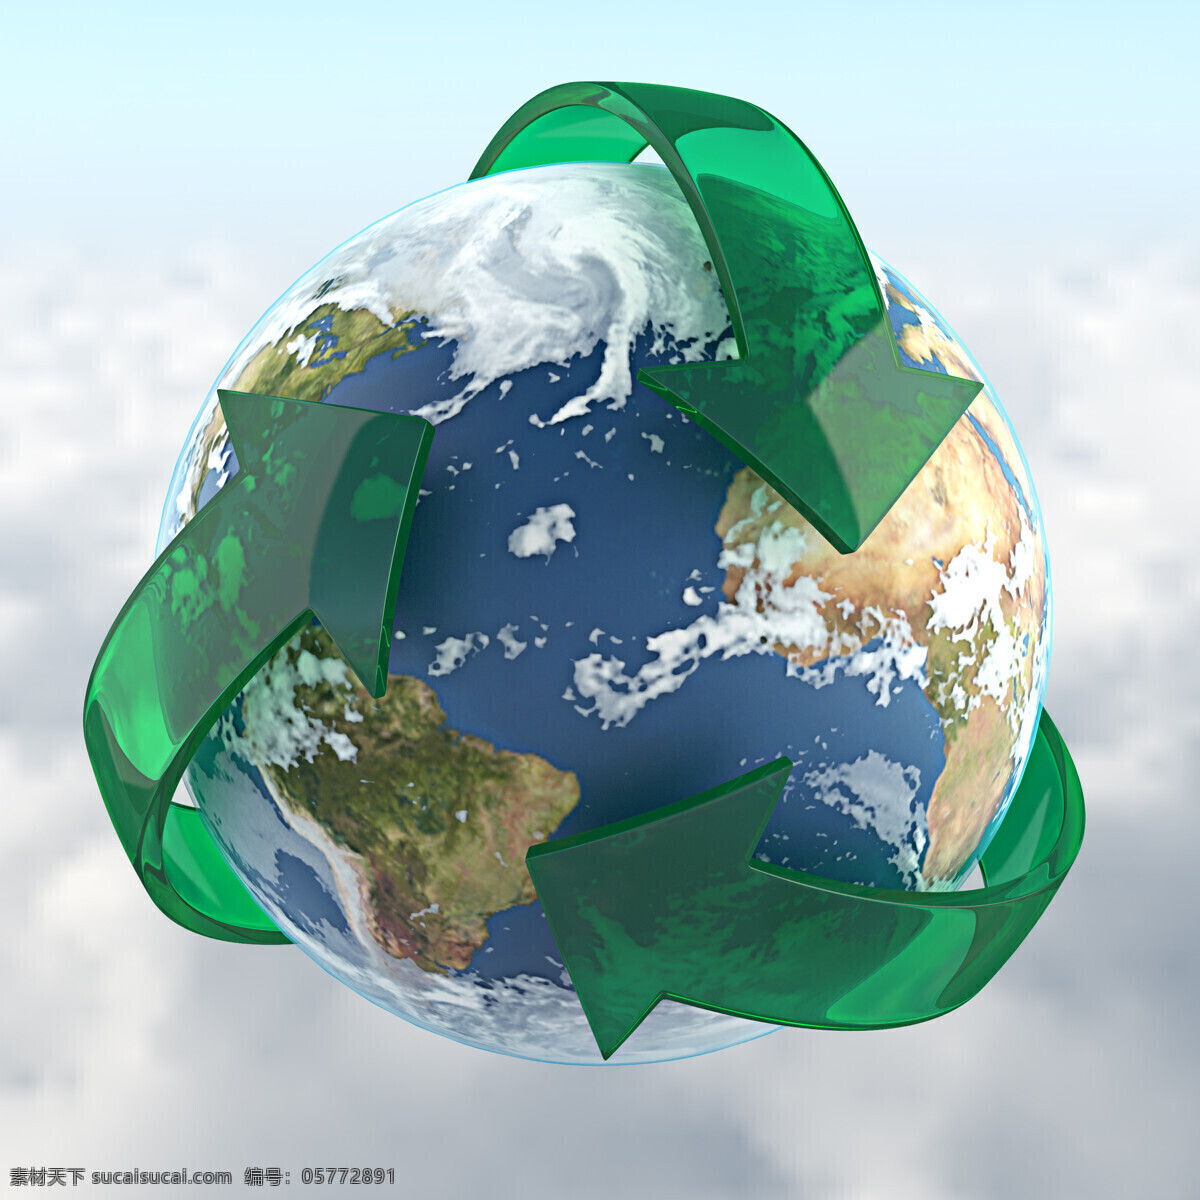 回收标与地球 回收标 环保概念 绿色环保 地球保护 生态环保 节能环保 其他类别 生活百科 白色